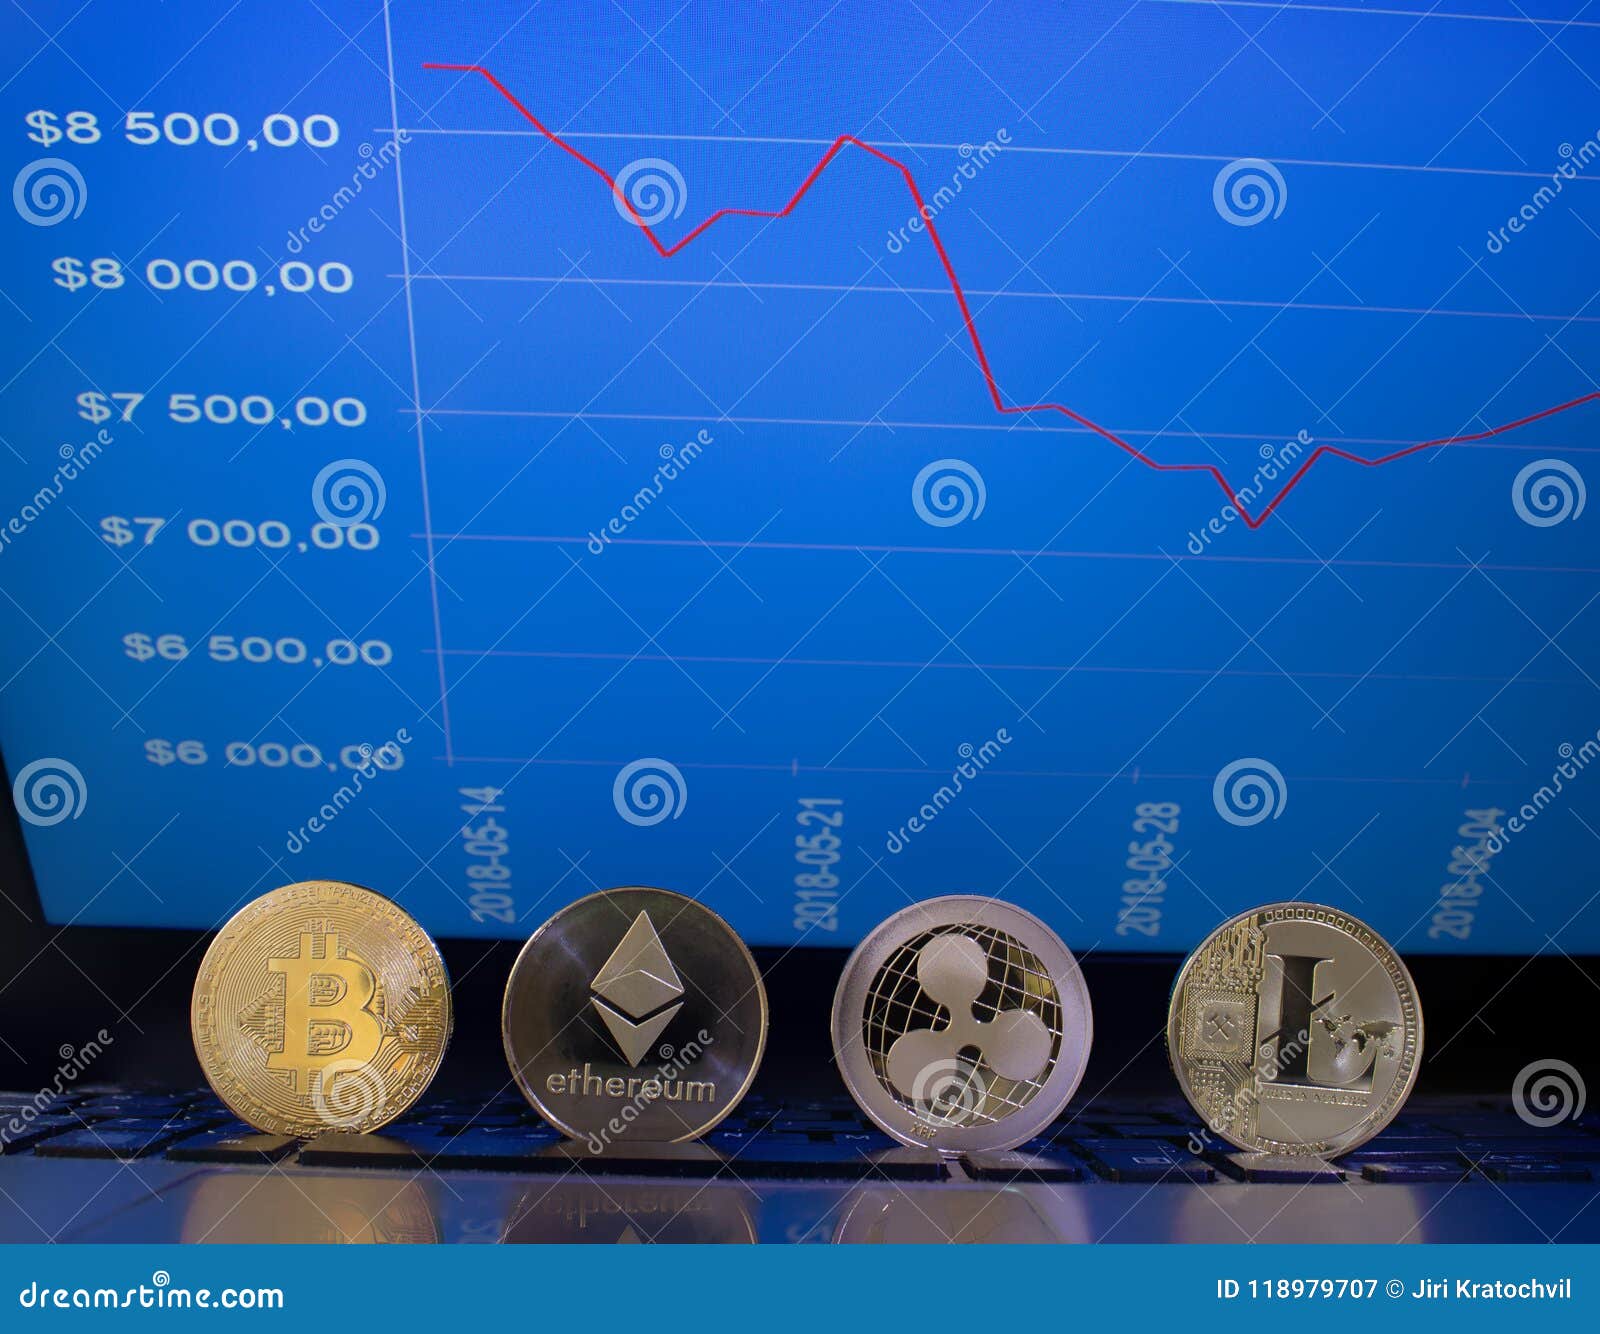 the graph coin crypto